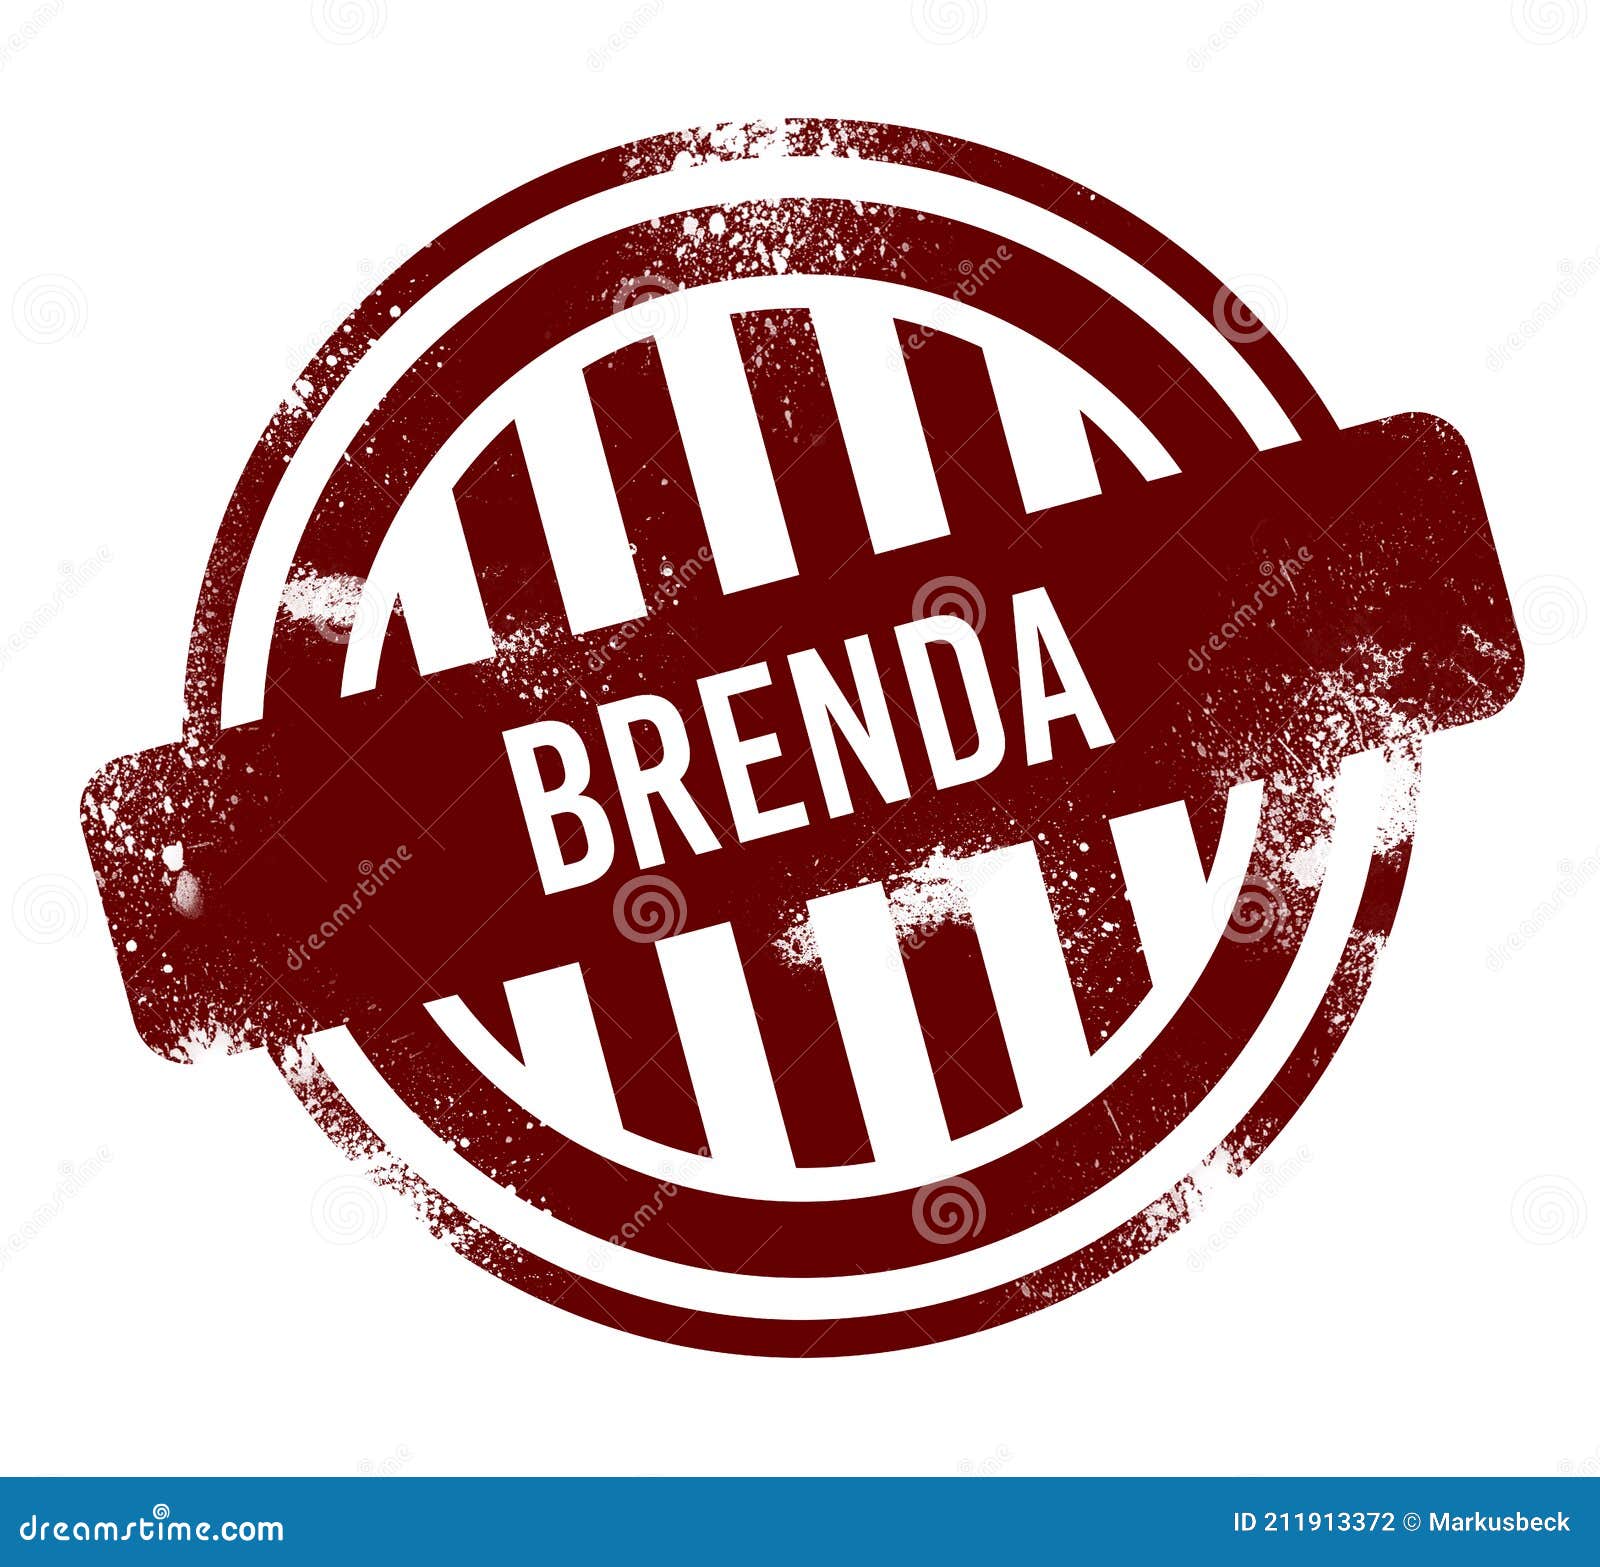 brenda - red round grunge button, stamp